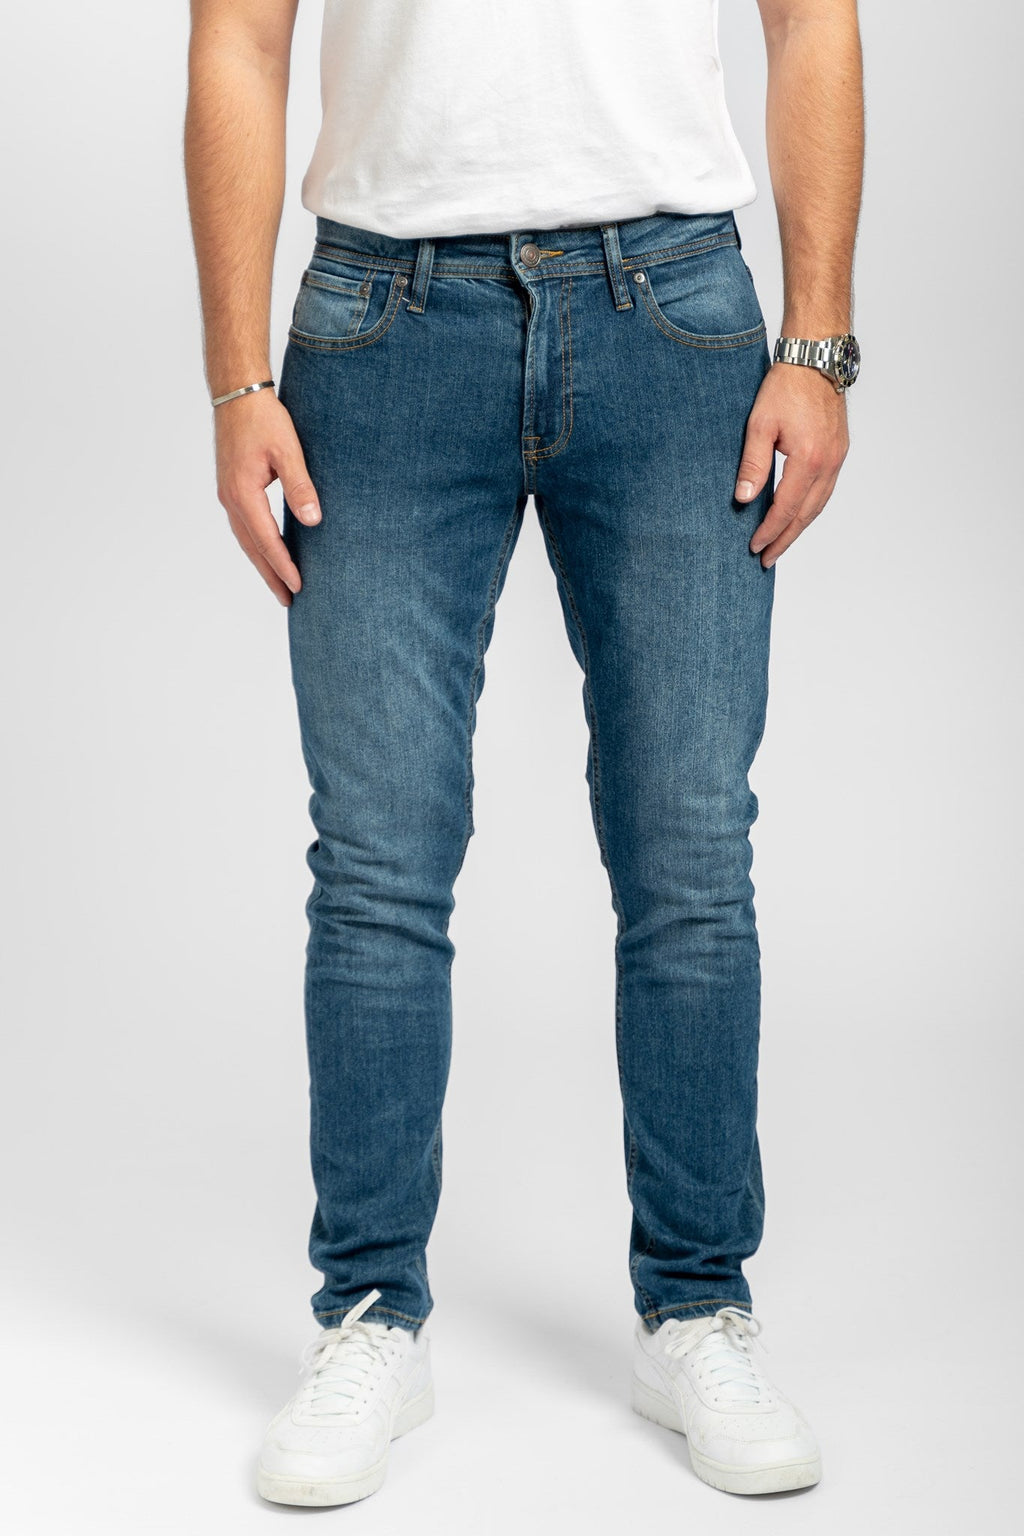 Los jeans de rendimiento originales (delgados) - mezclilla azul medio